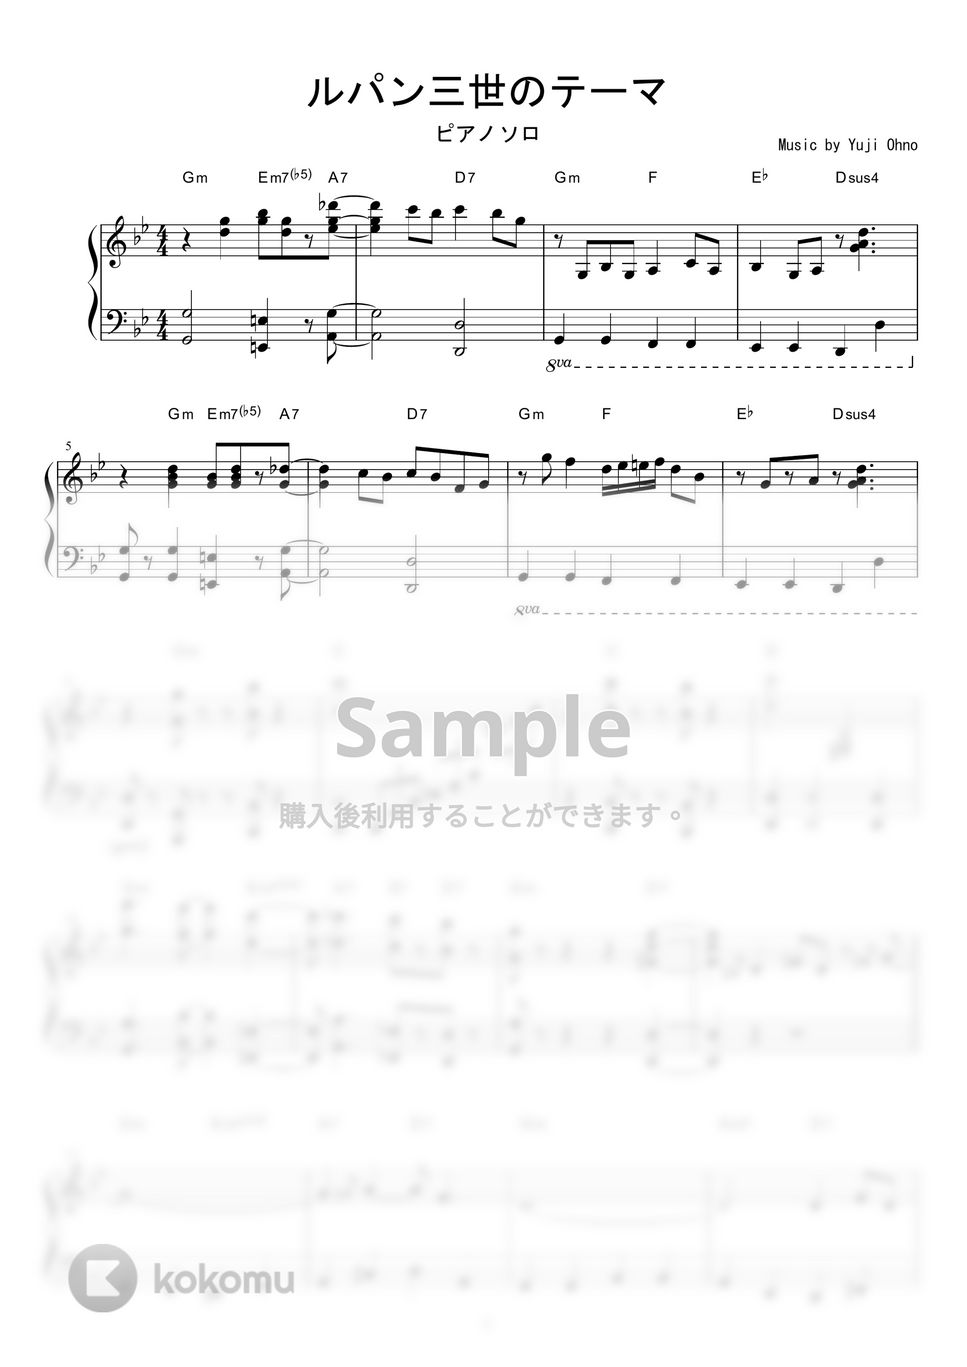 ルパン三世 - ルパン三世のテーマ by piano*score